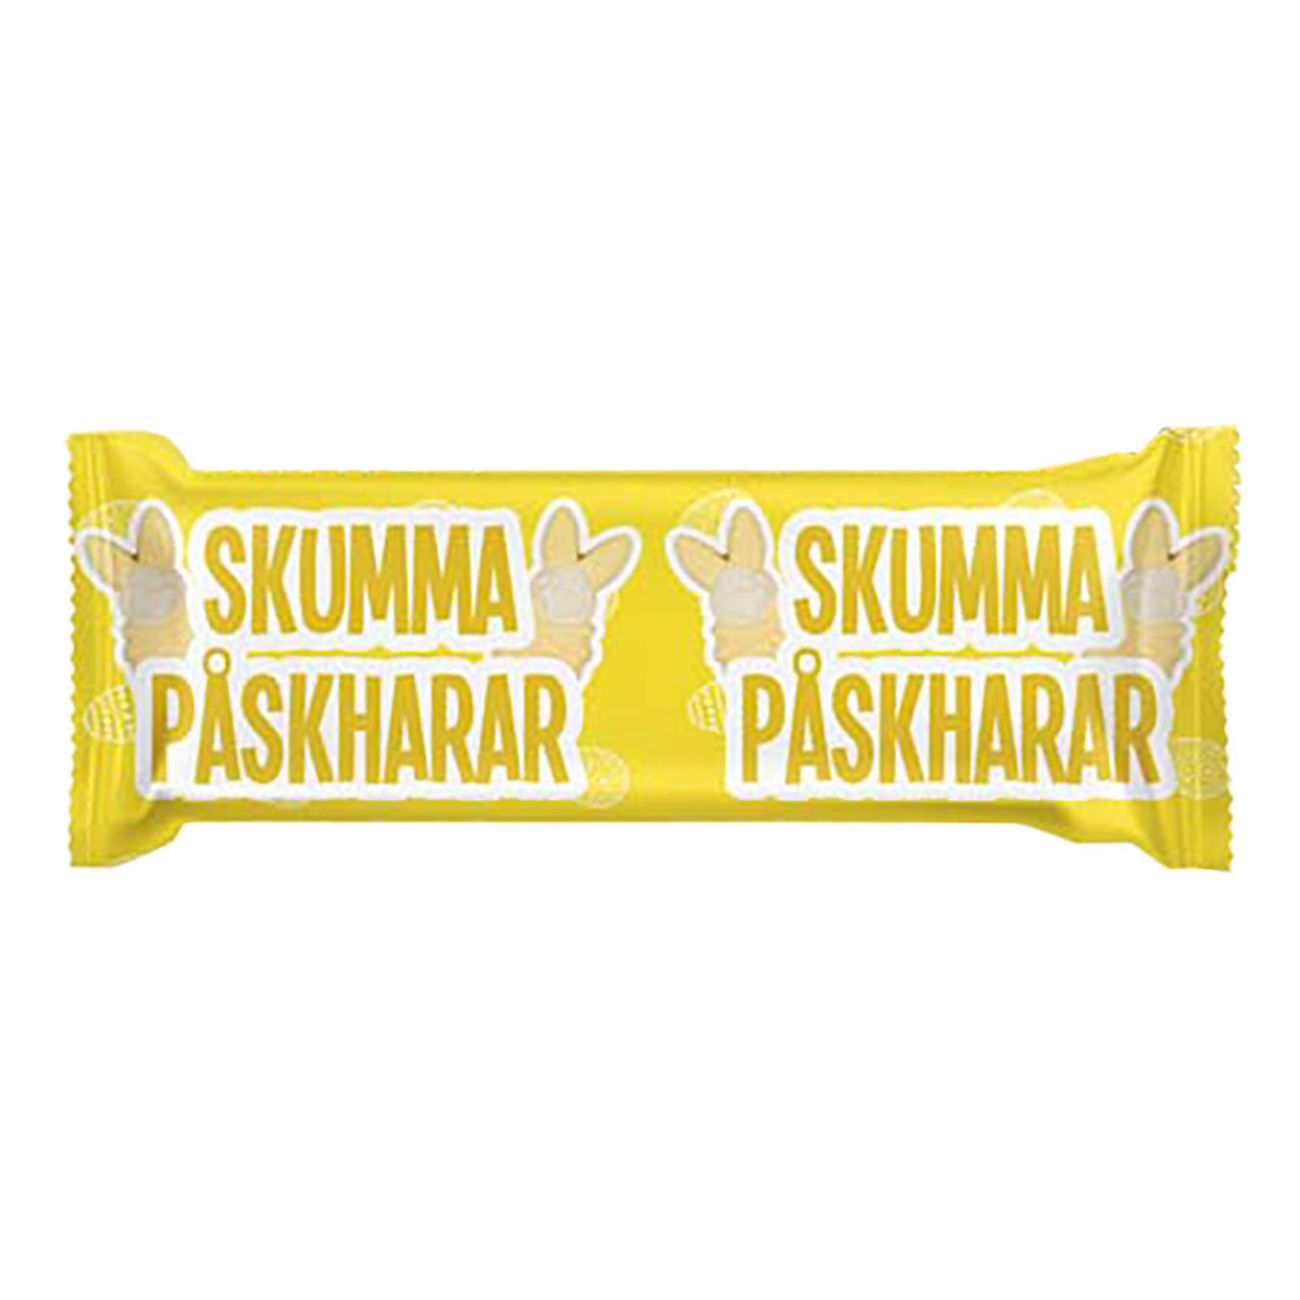 skumma-paskharar-83230-1